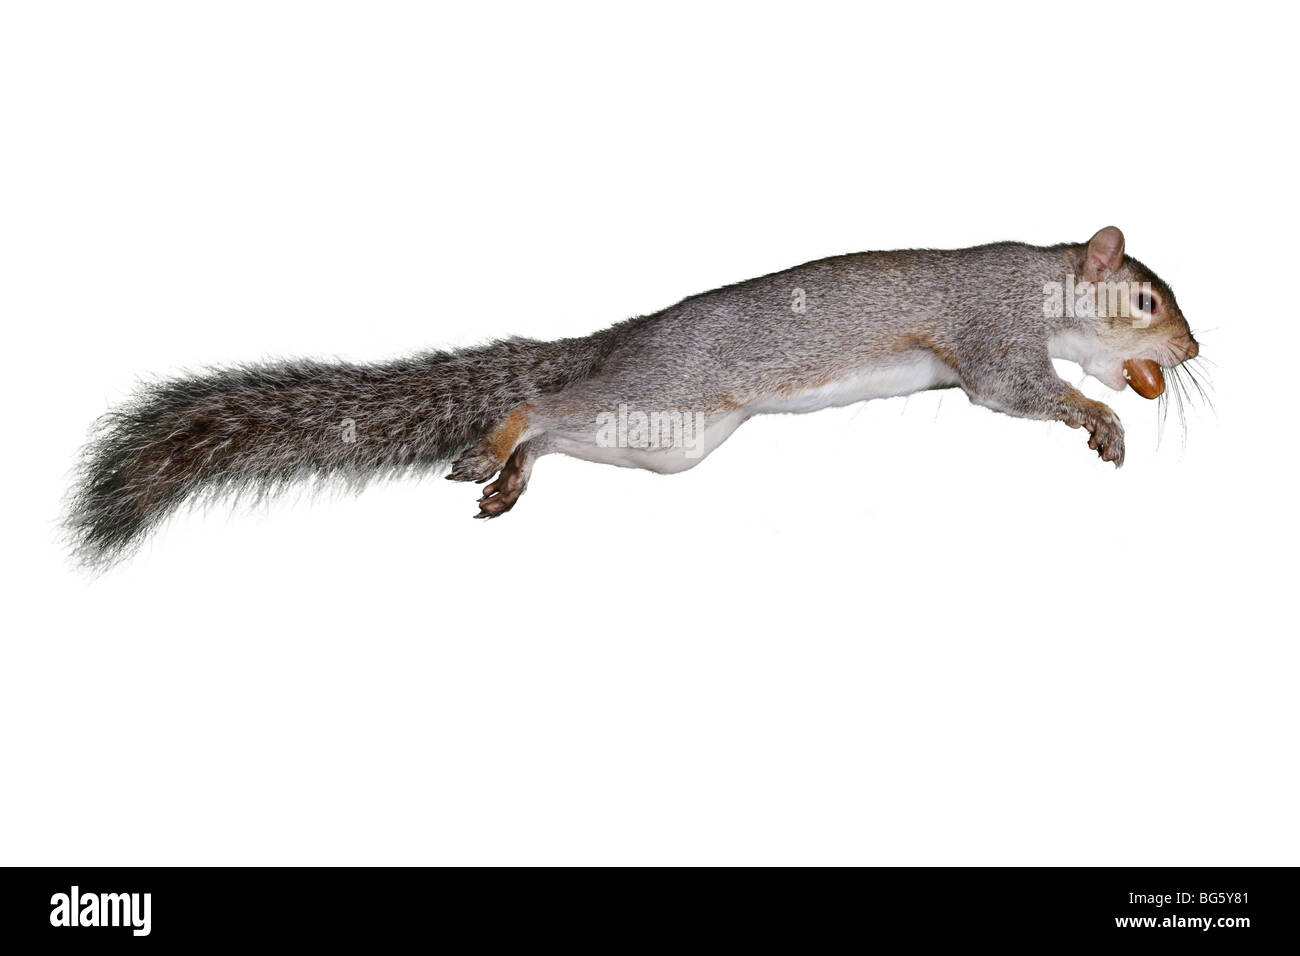 Grey Squirrel Sciurus carolinensis jumping with Acorn Stock Photo